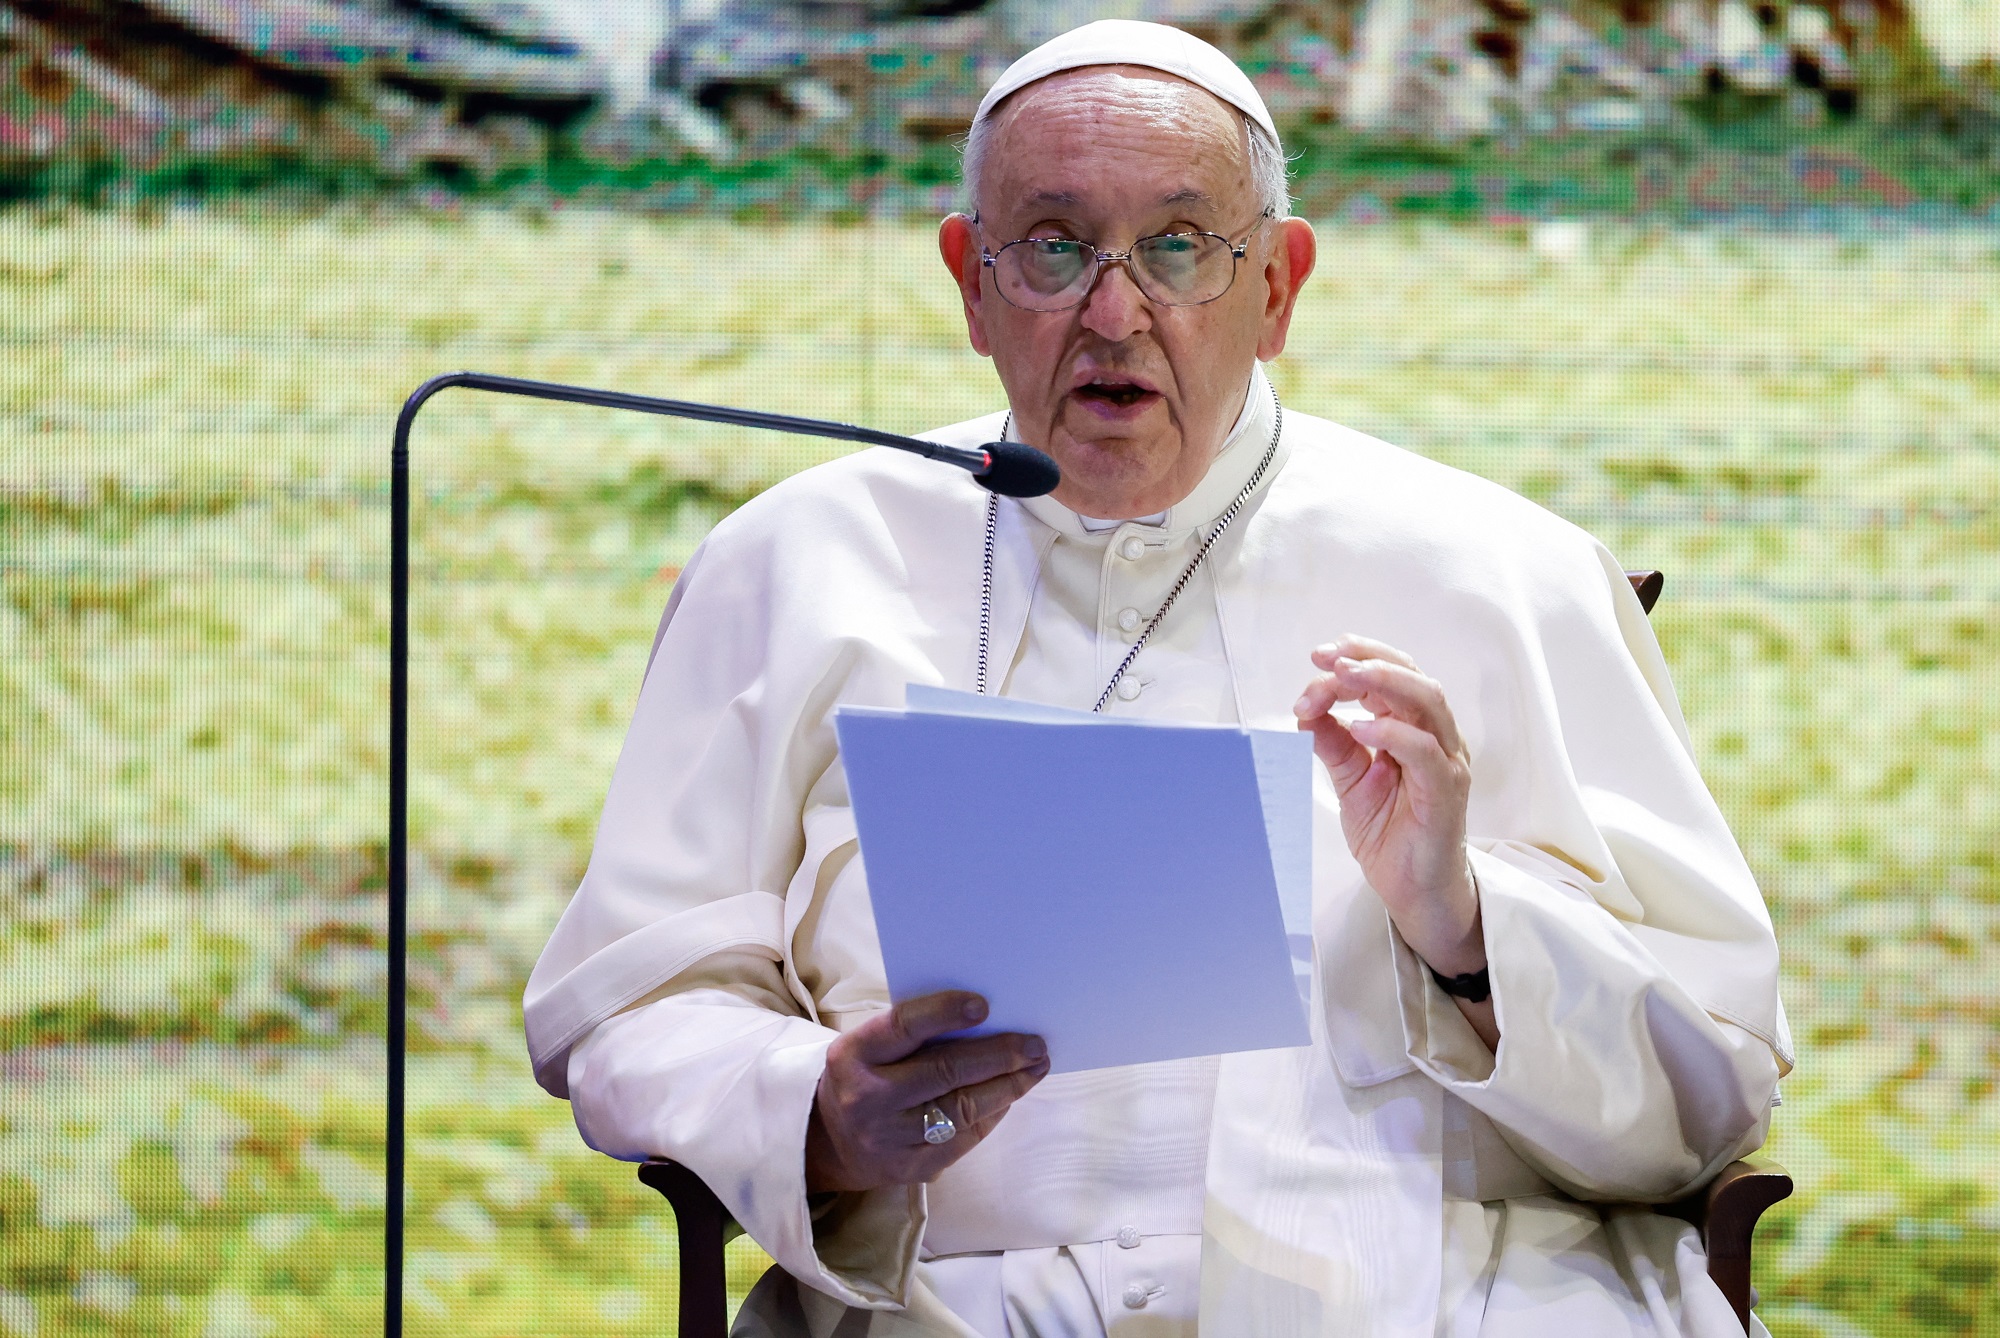   بابا الفاتيكان يحث على الحوار لحل مشاكل العالم